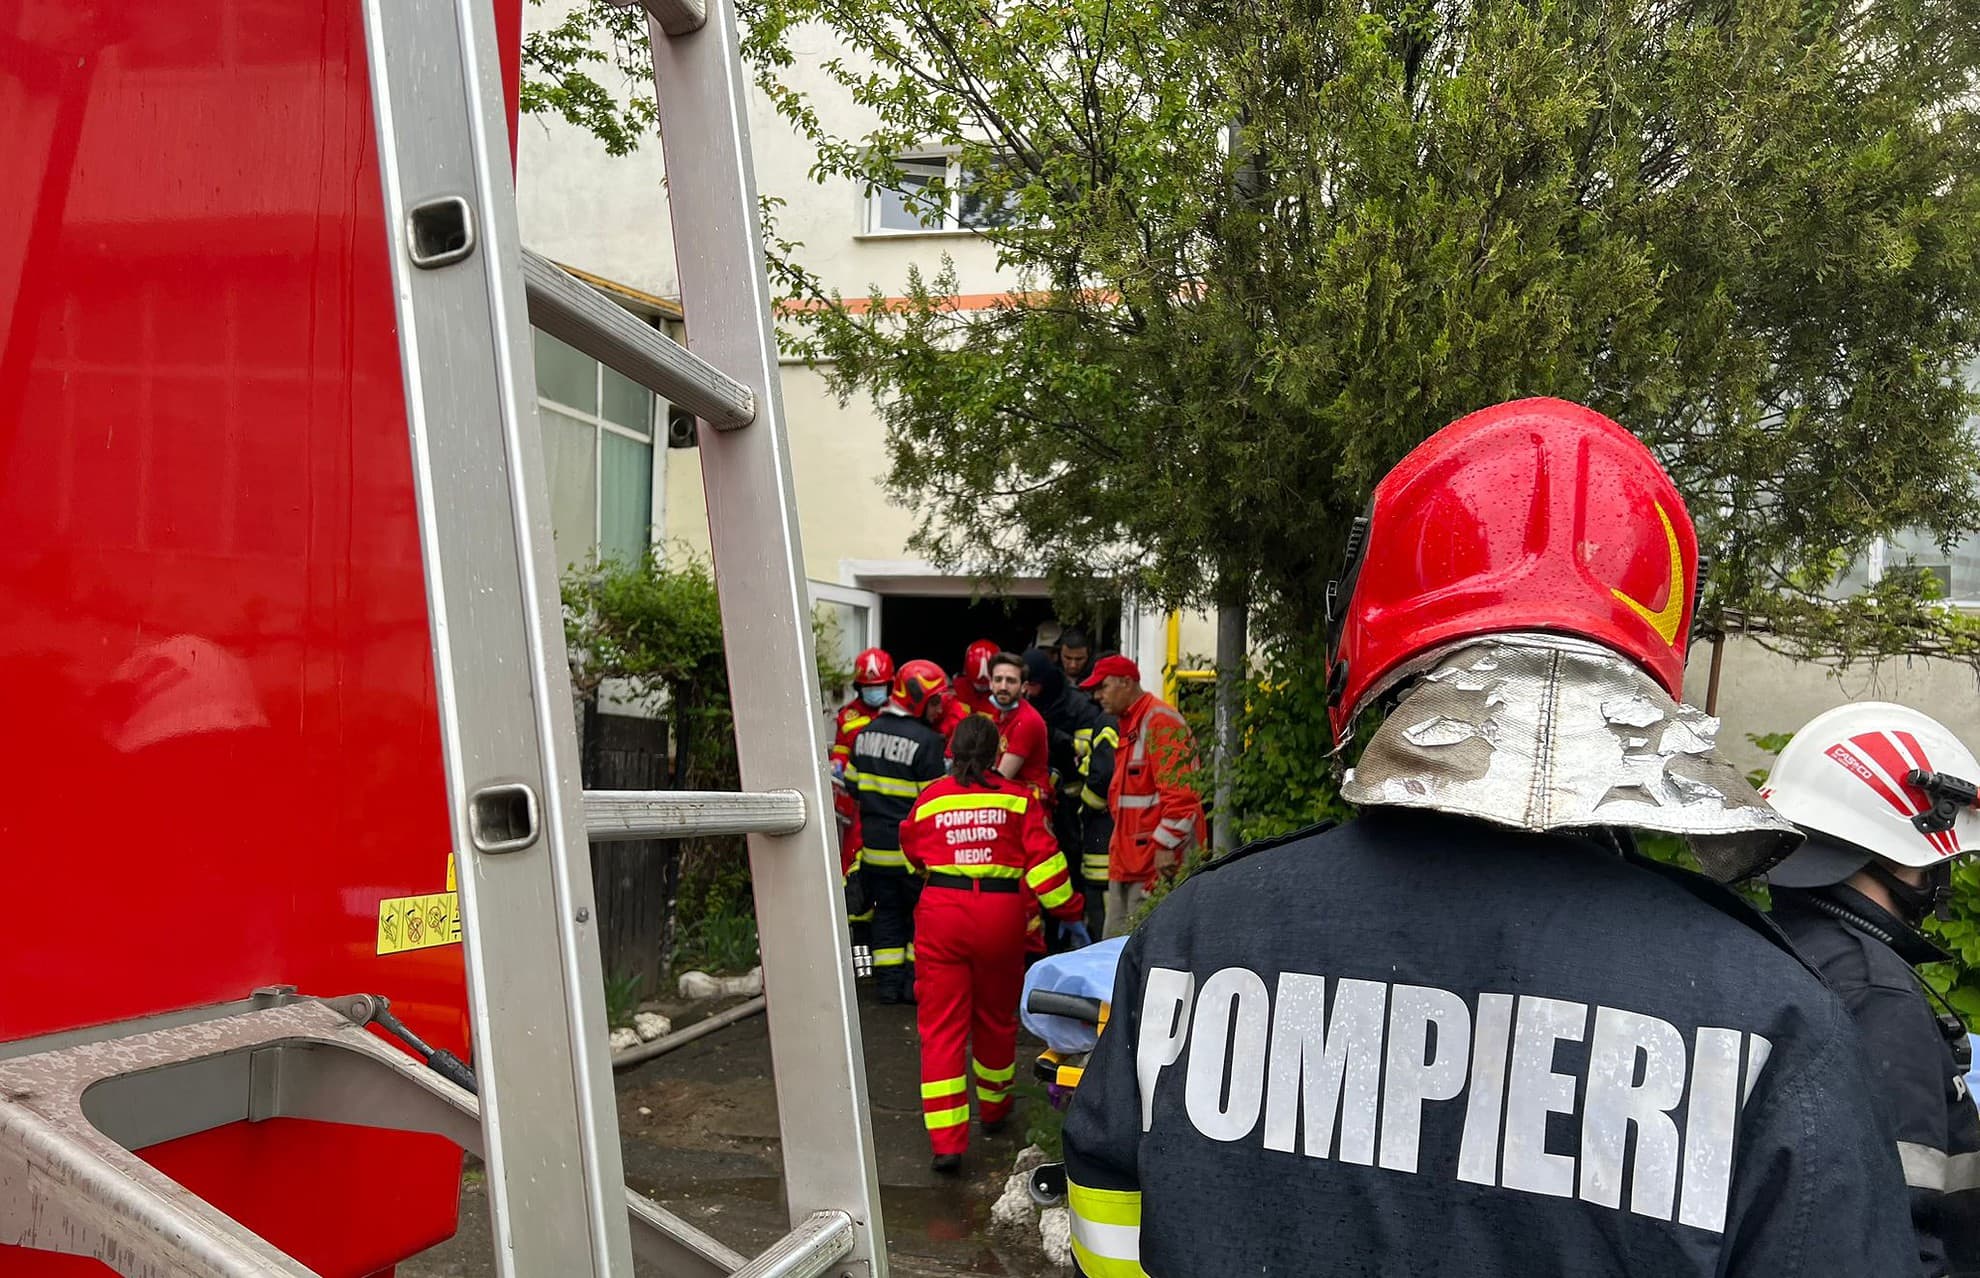 foto: incendiu într-un apartament pe strada arieșului - bărbat găsit inconștient în locuință